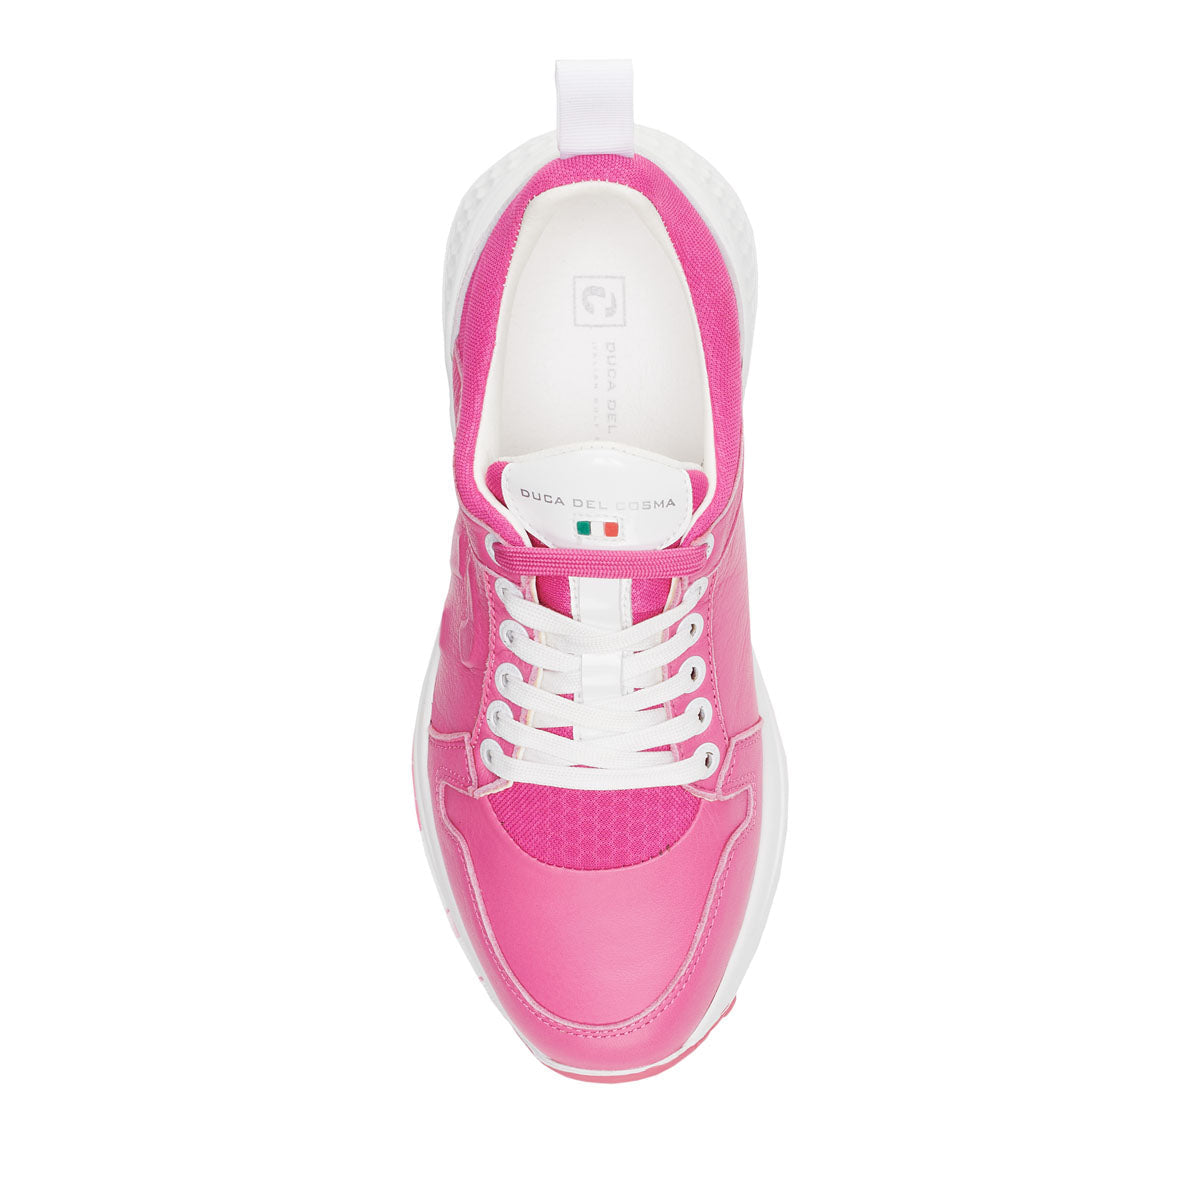 Siren Pink - Womens golf shoes